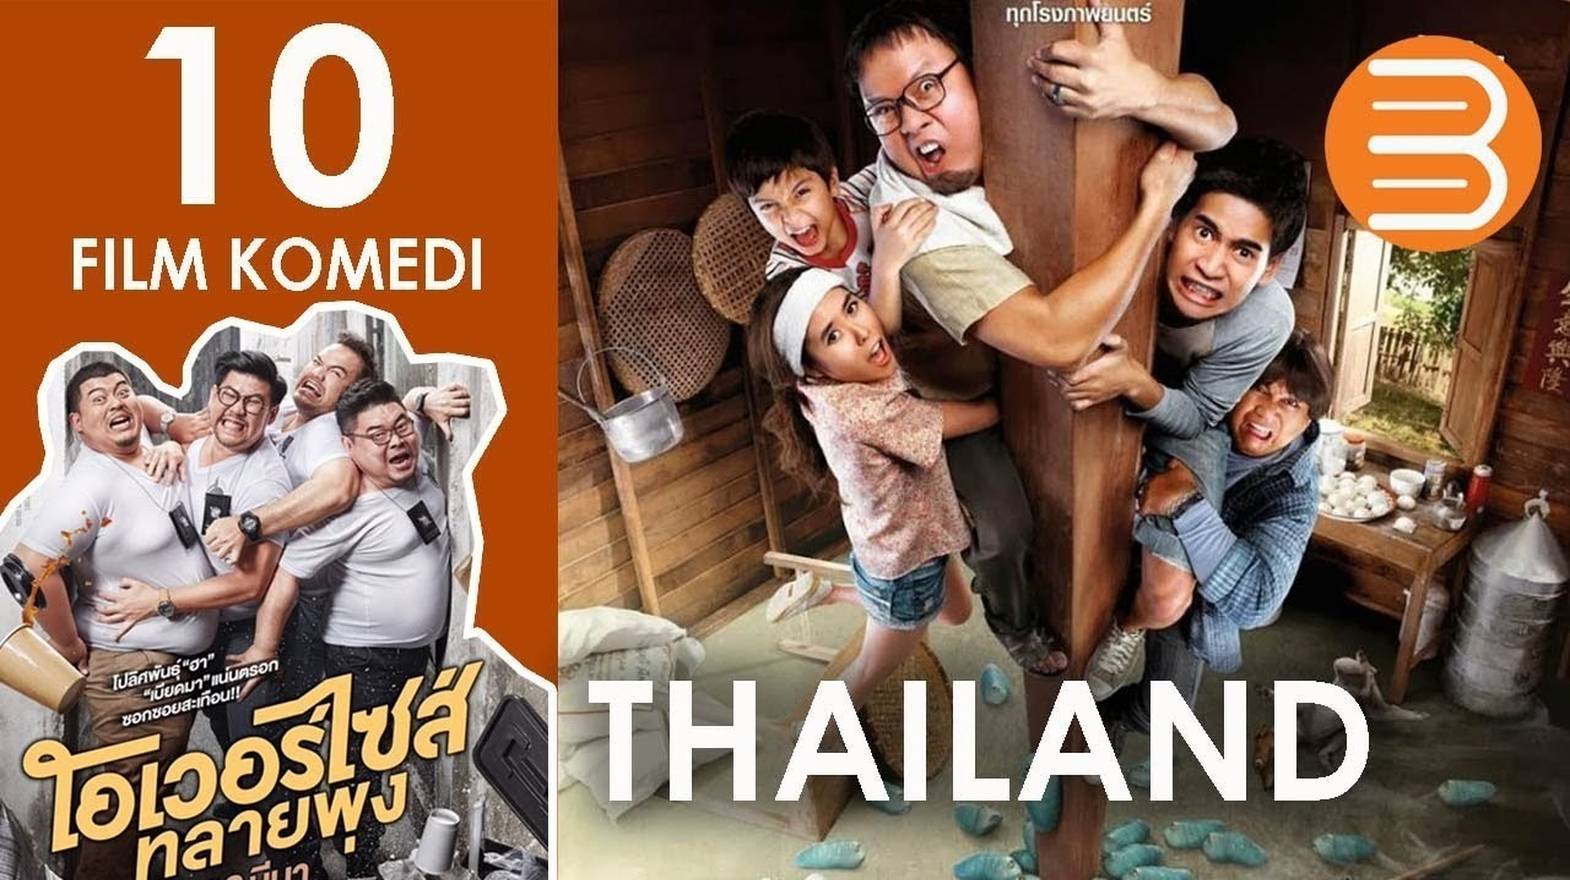 10 Film Komedi Thailand Yang Paling Lucu Dan Konyol 2022 Full Movie Vidio 